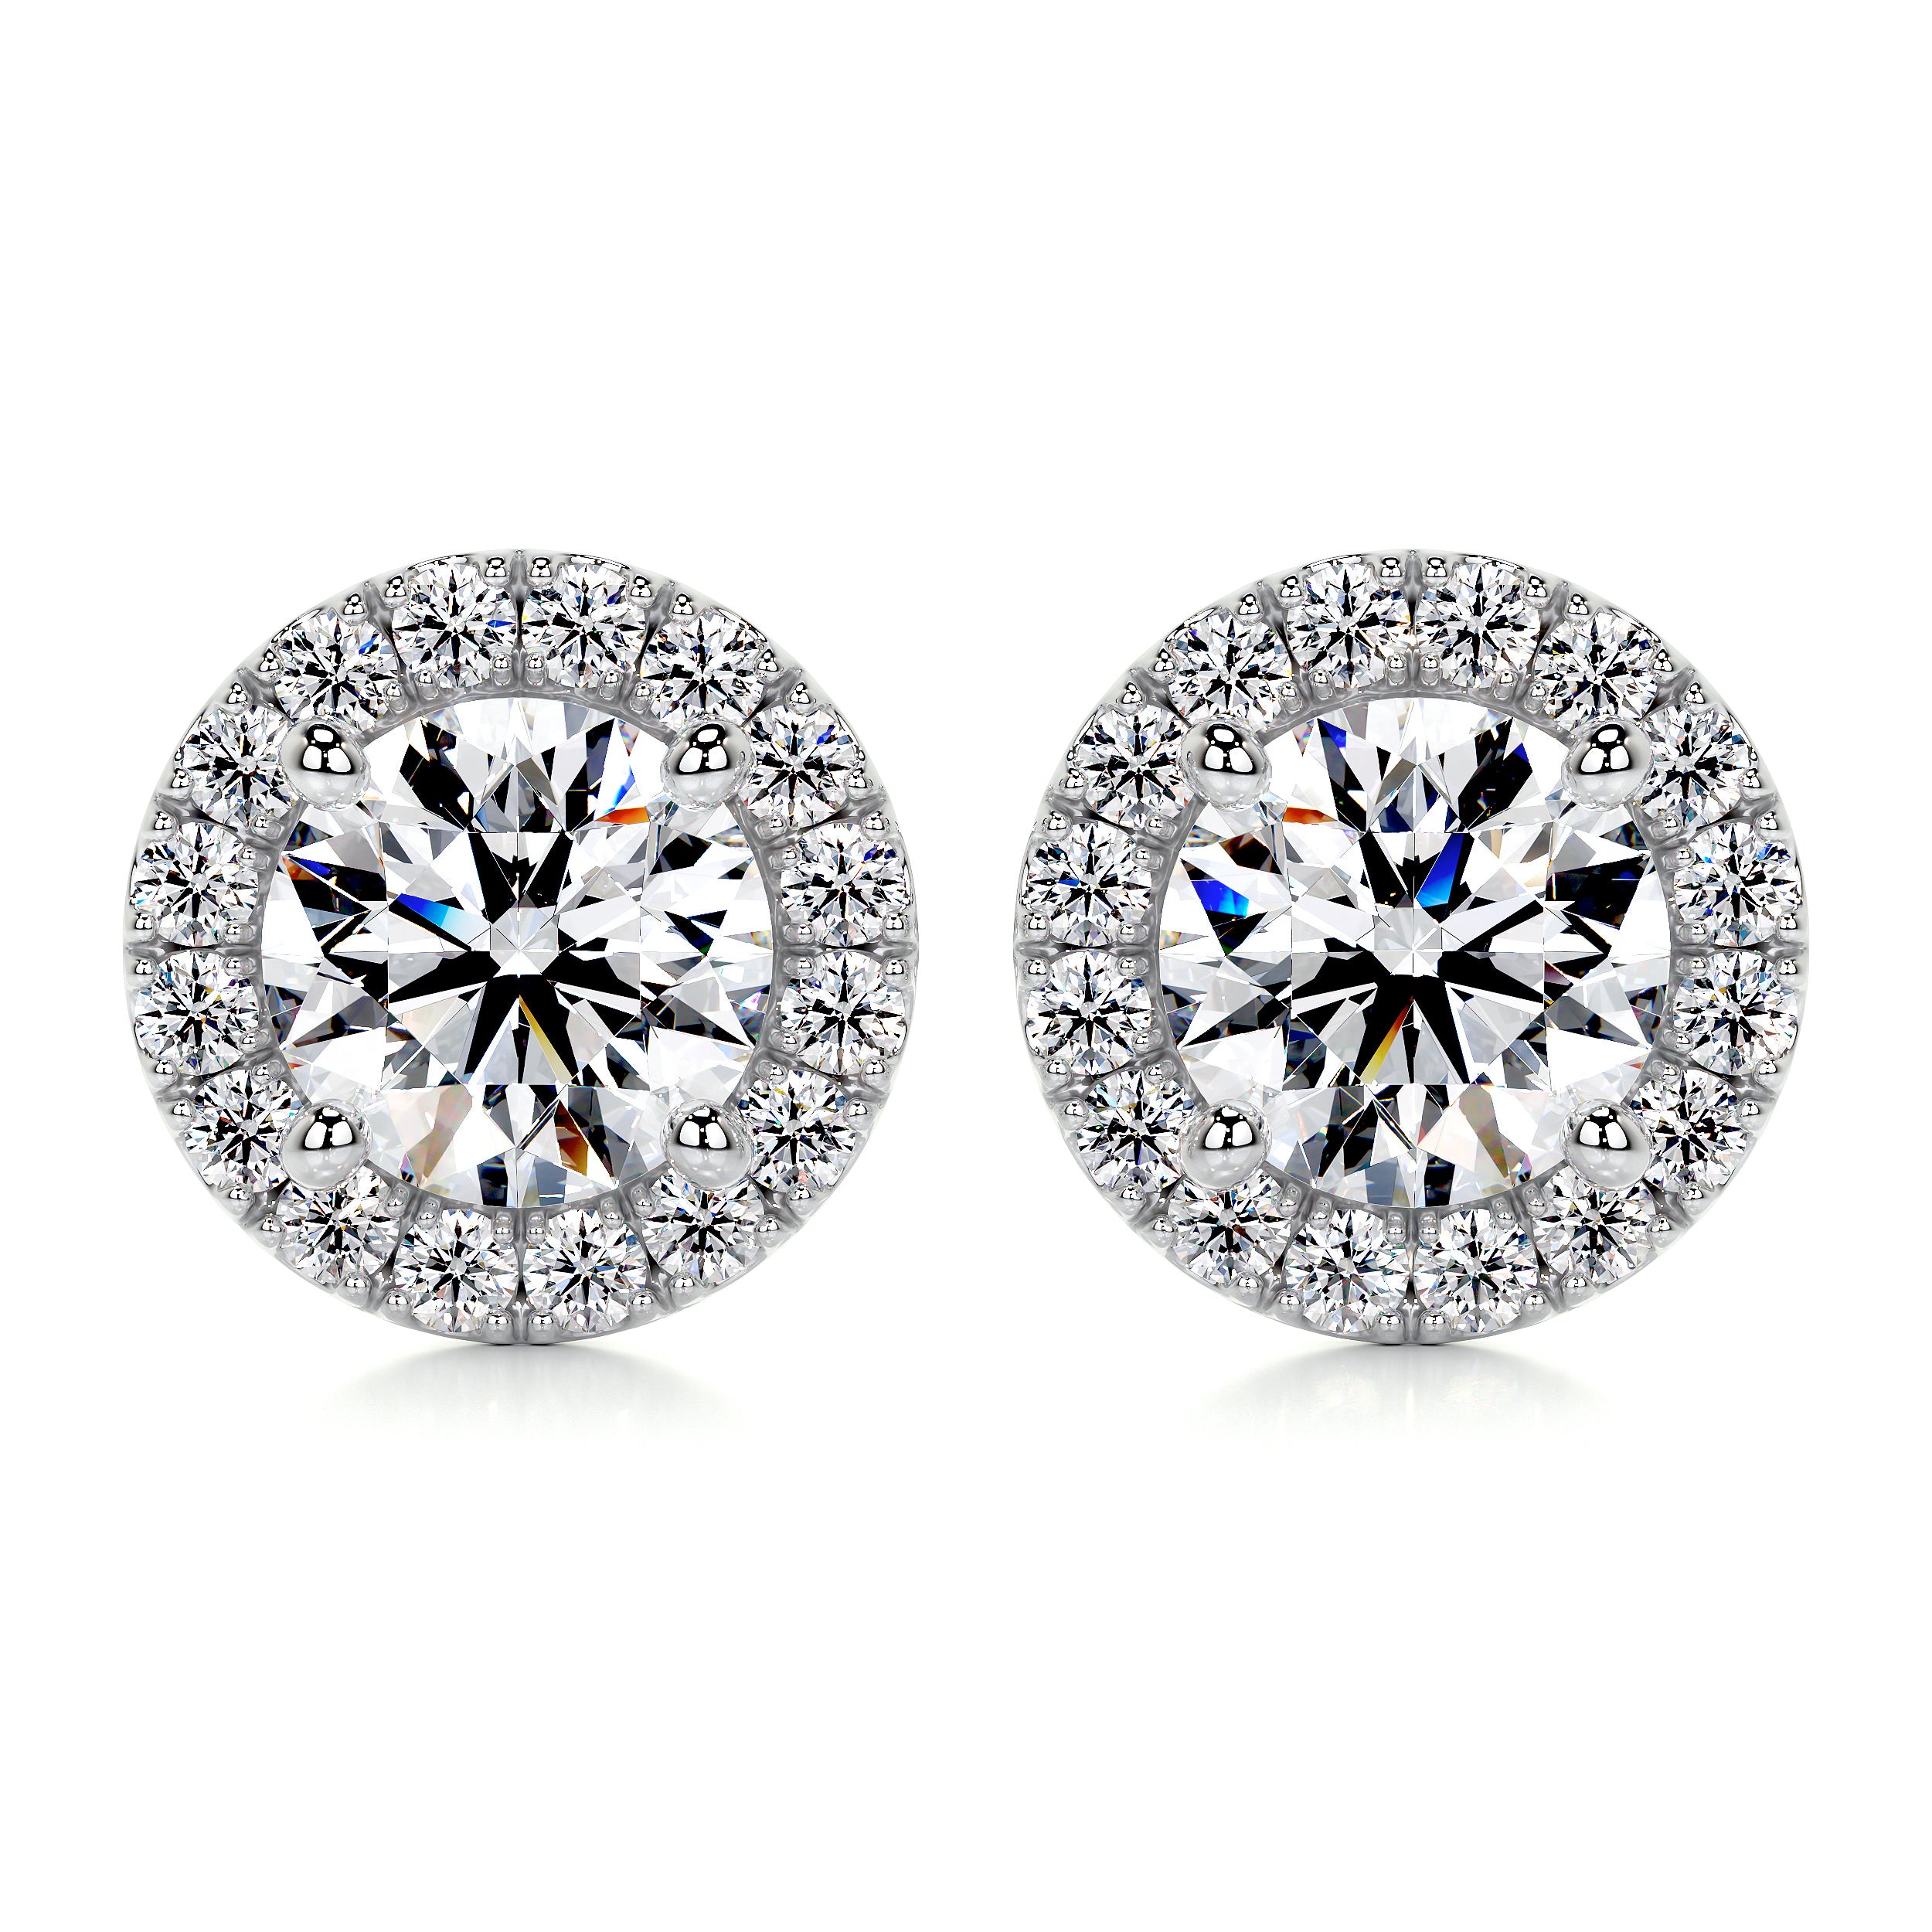 Erica Diamond Earrings   (1 Carat) -18K White Gold